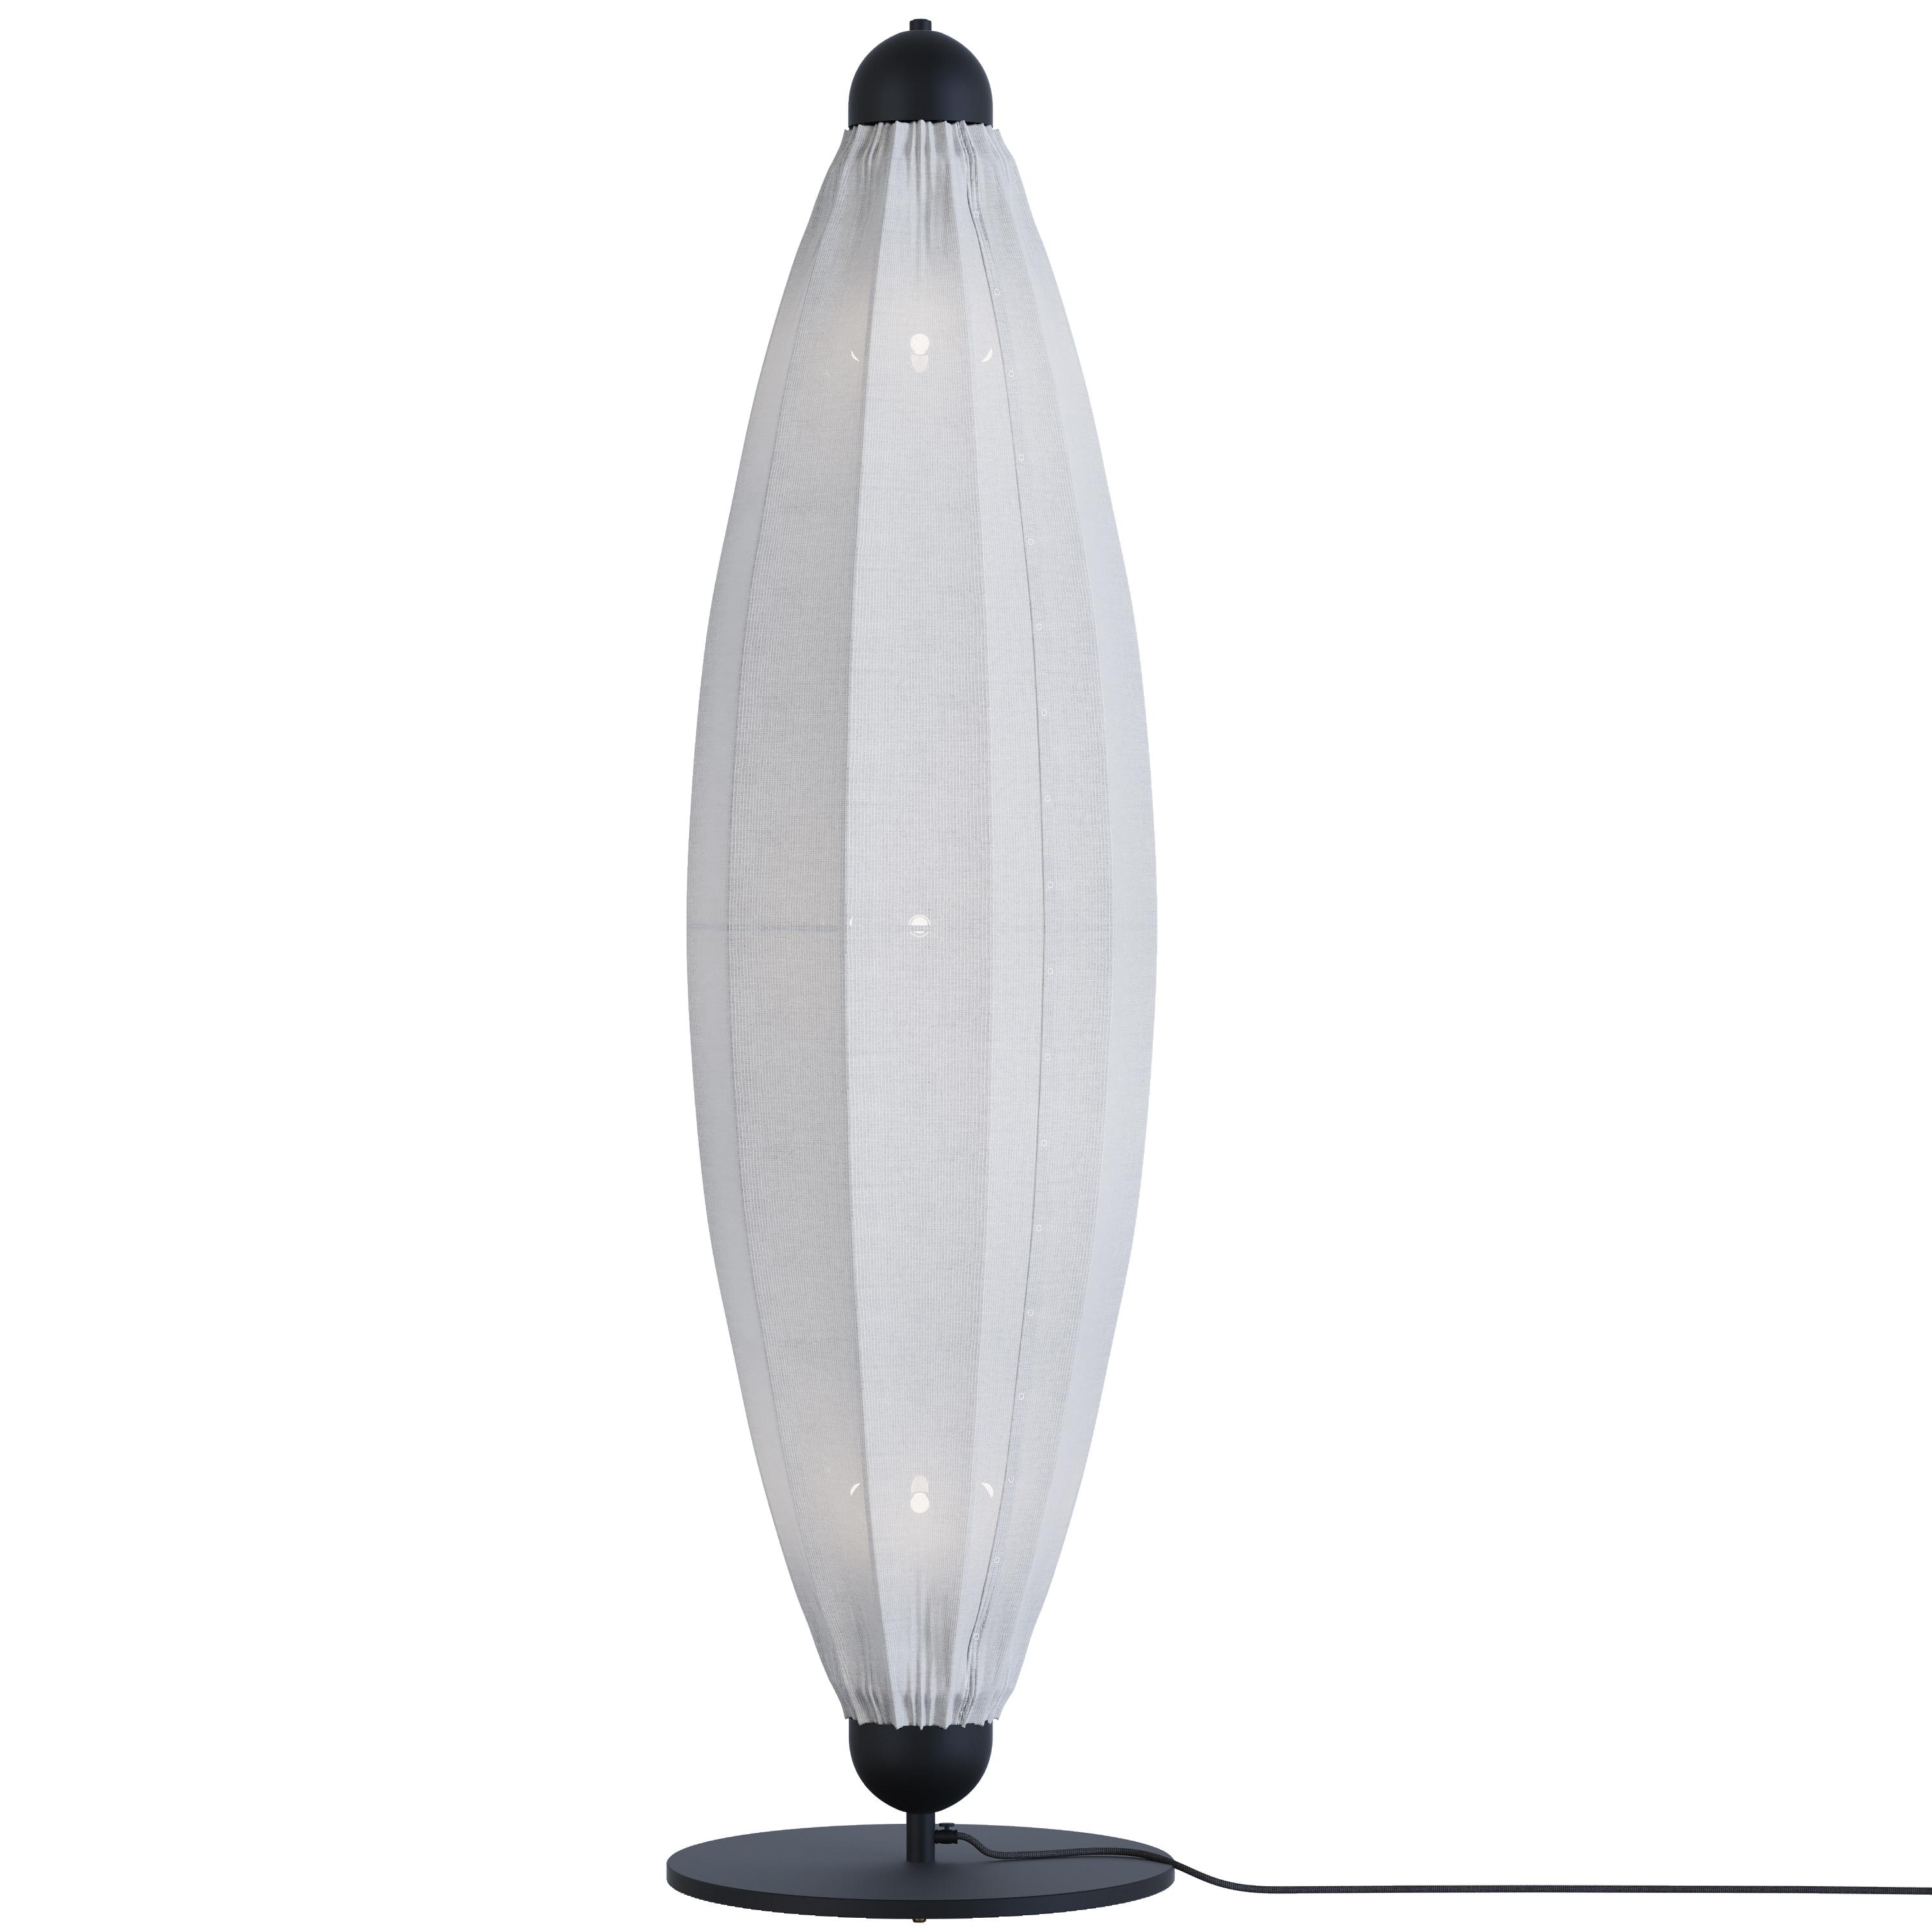 Chrystalis floor lamp, SKU. 28462 by Pikartlights 3d model